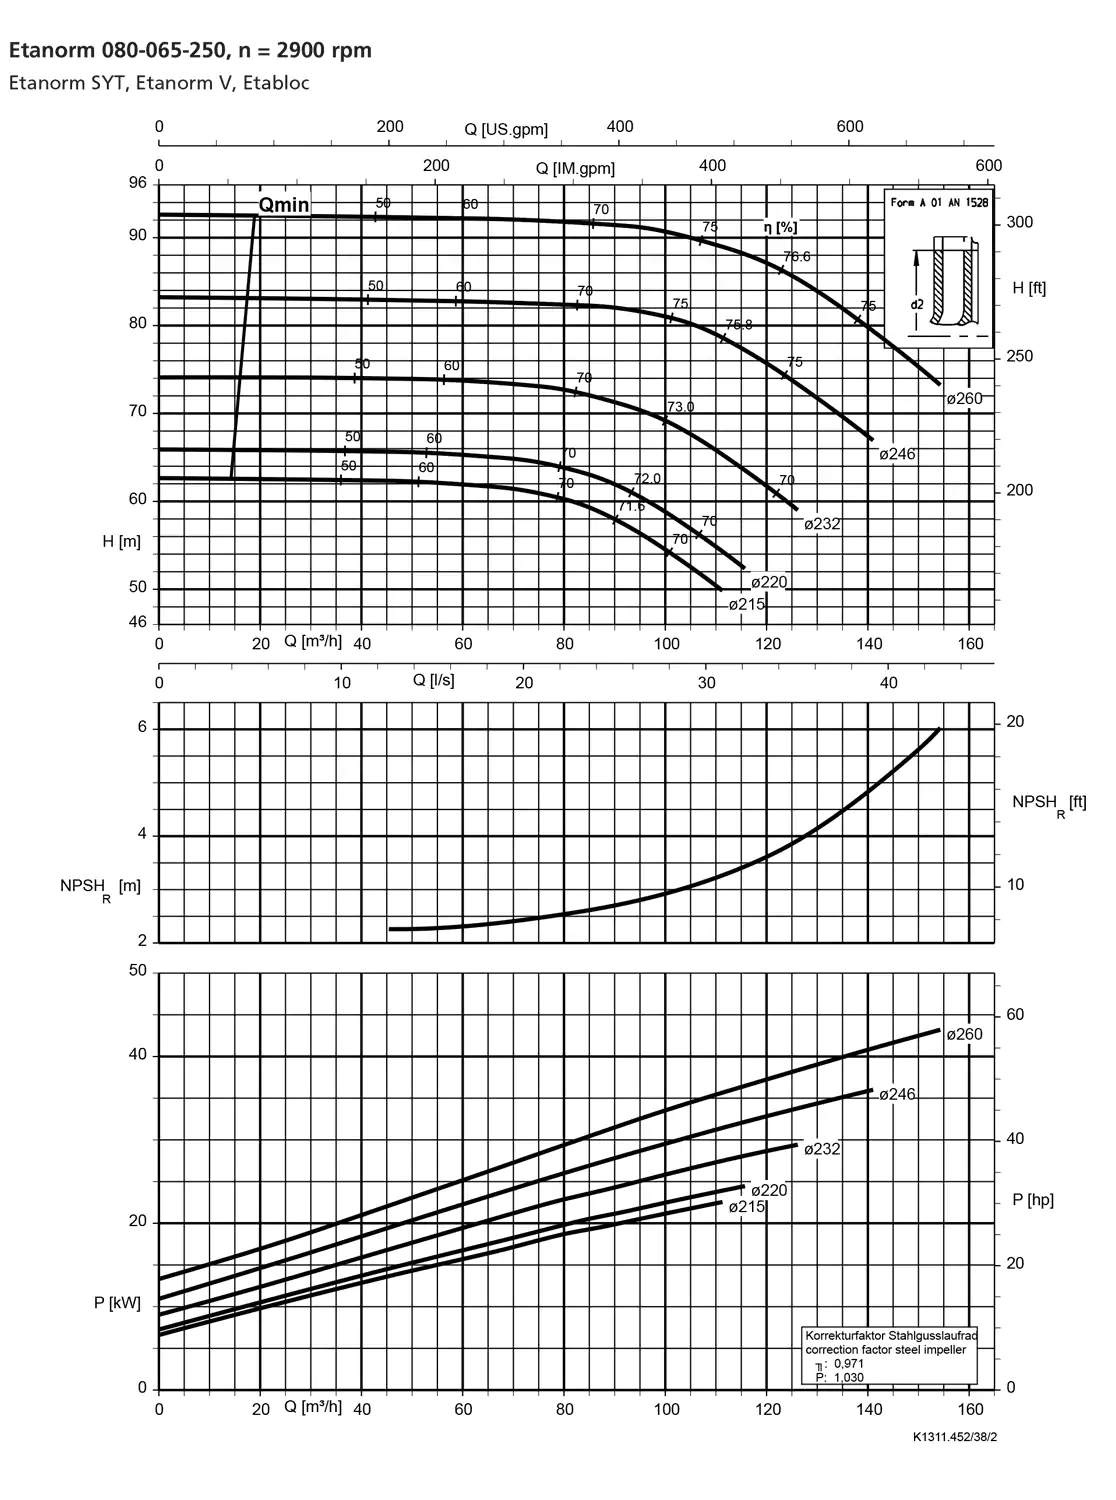 نمودار-کارکرد-پمپ-etanorm-syt-80-065-250-2900